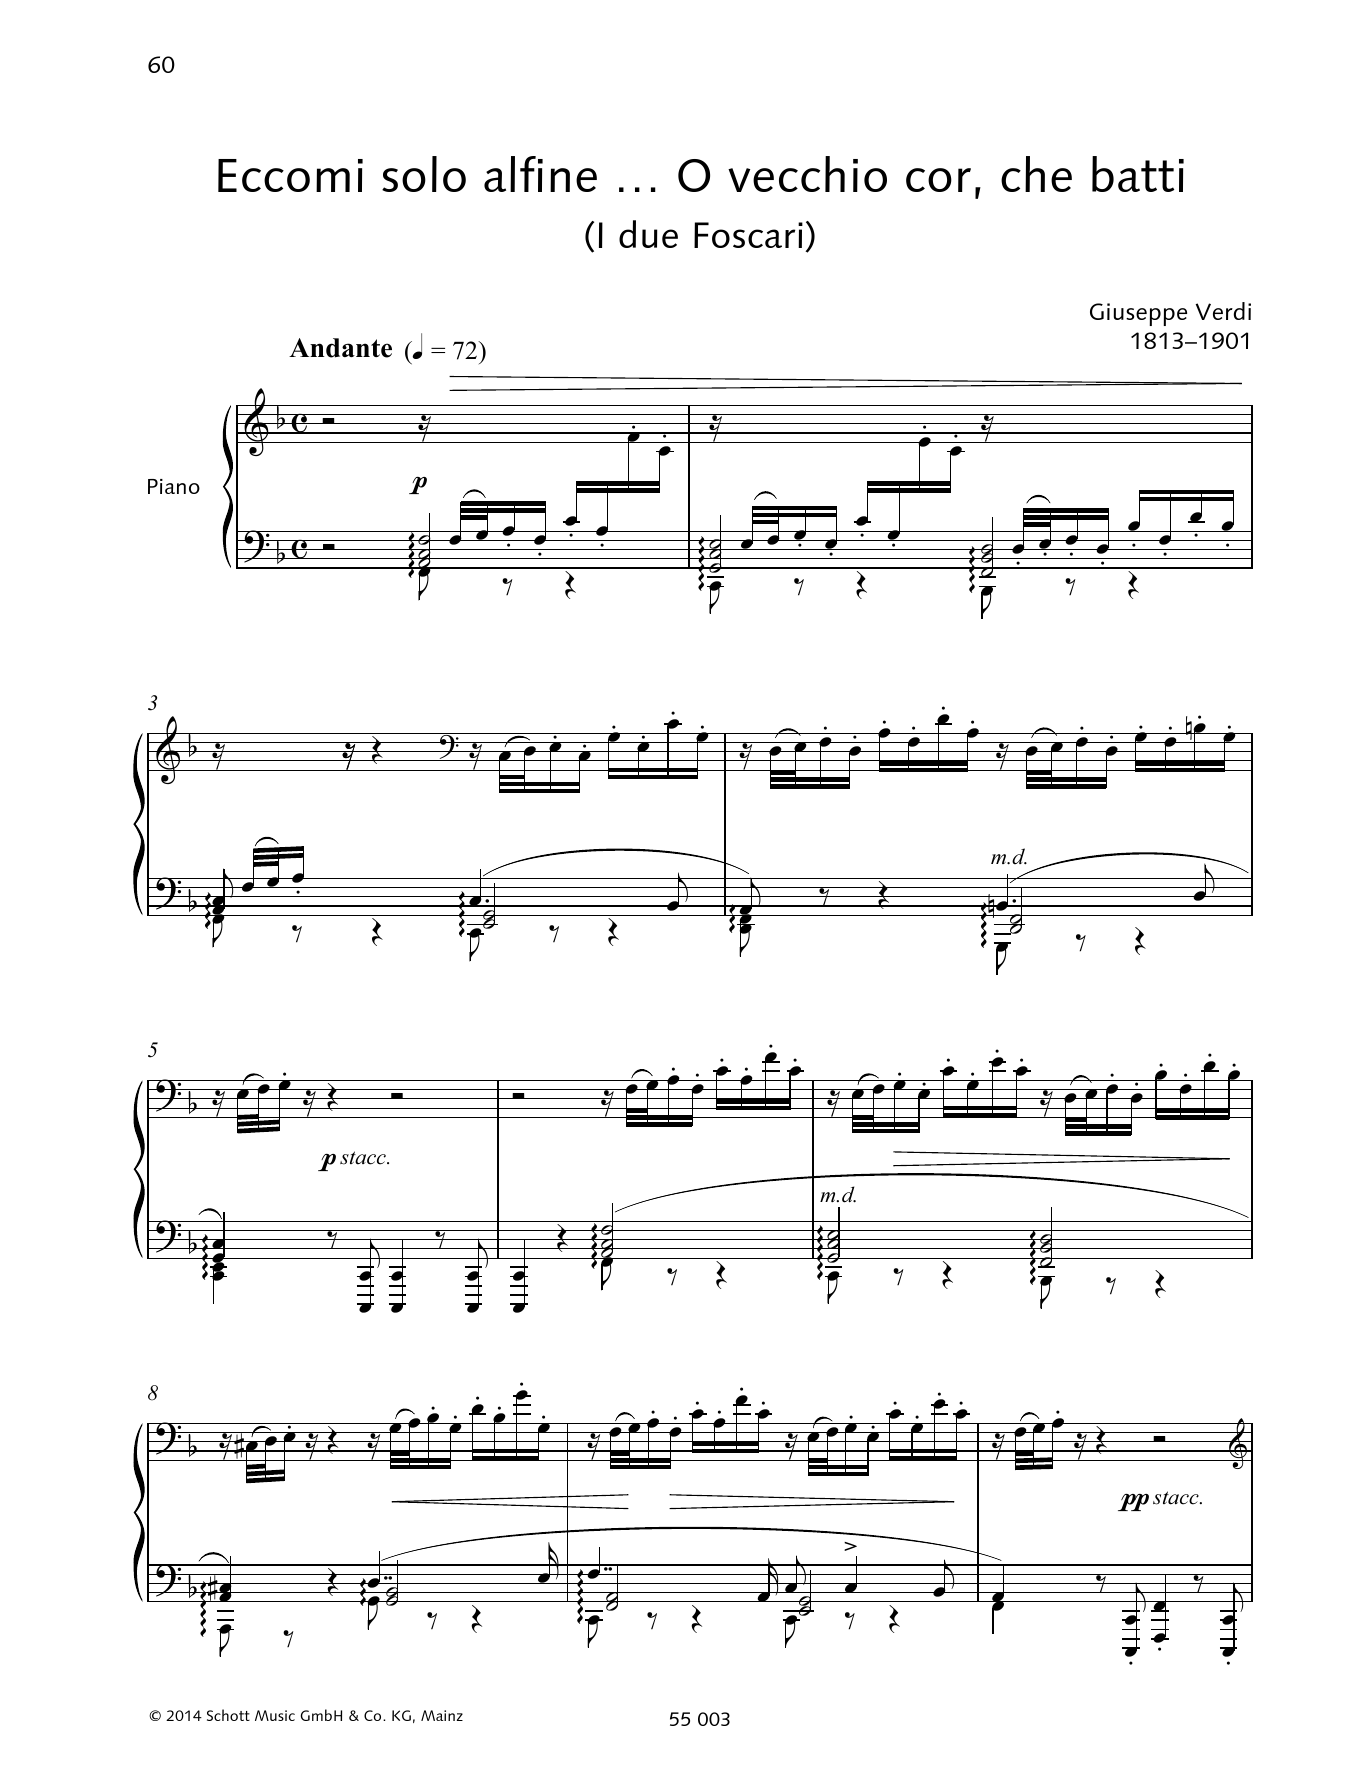 Download Giuseppe Verdi Eccomi solo alfine ... O vecchio cor, che batti Sheet Music and learn how to play Piano & Vocal PDF digital score in minutes